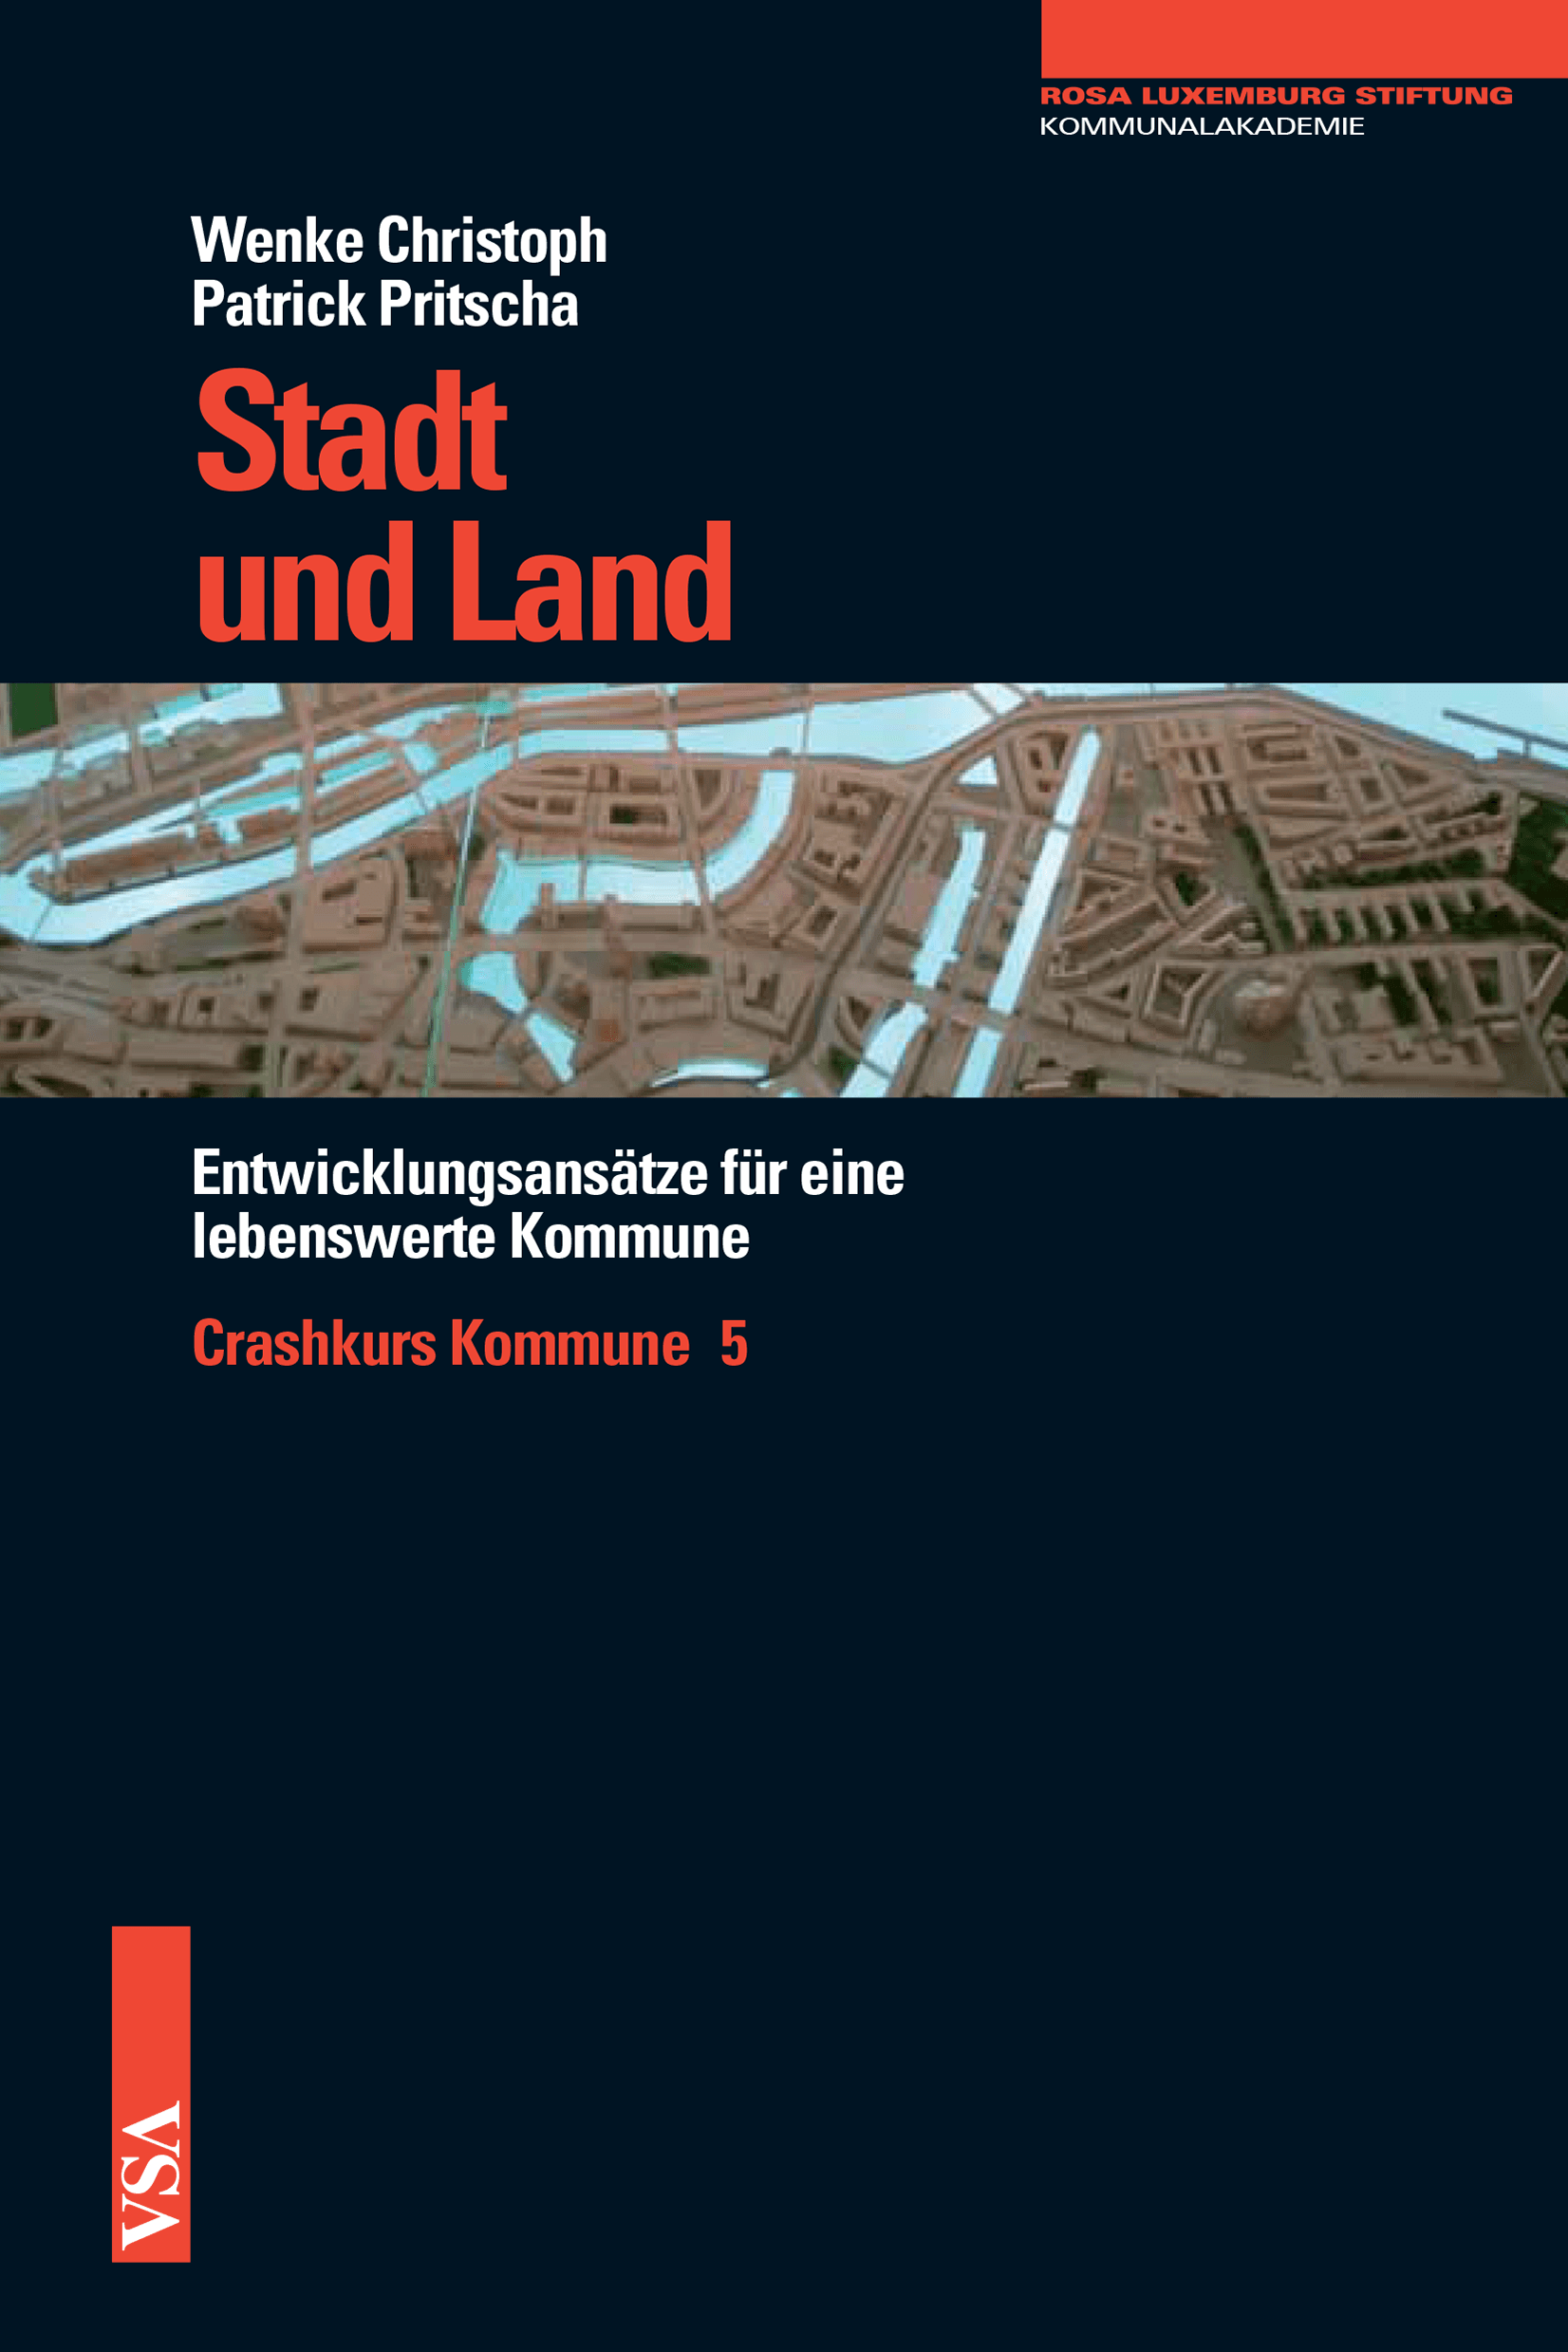 Buchcover: "Stadt und Land: Entwicklungsansätze für eine lebenswerte Kommune - Crashkurs Kommune 5" von Wenke Christoph und Patrick Pritscha